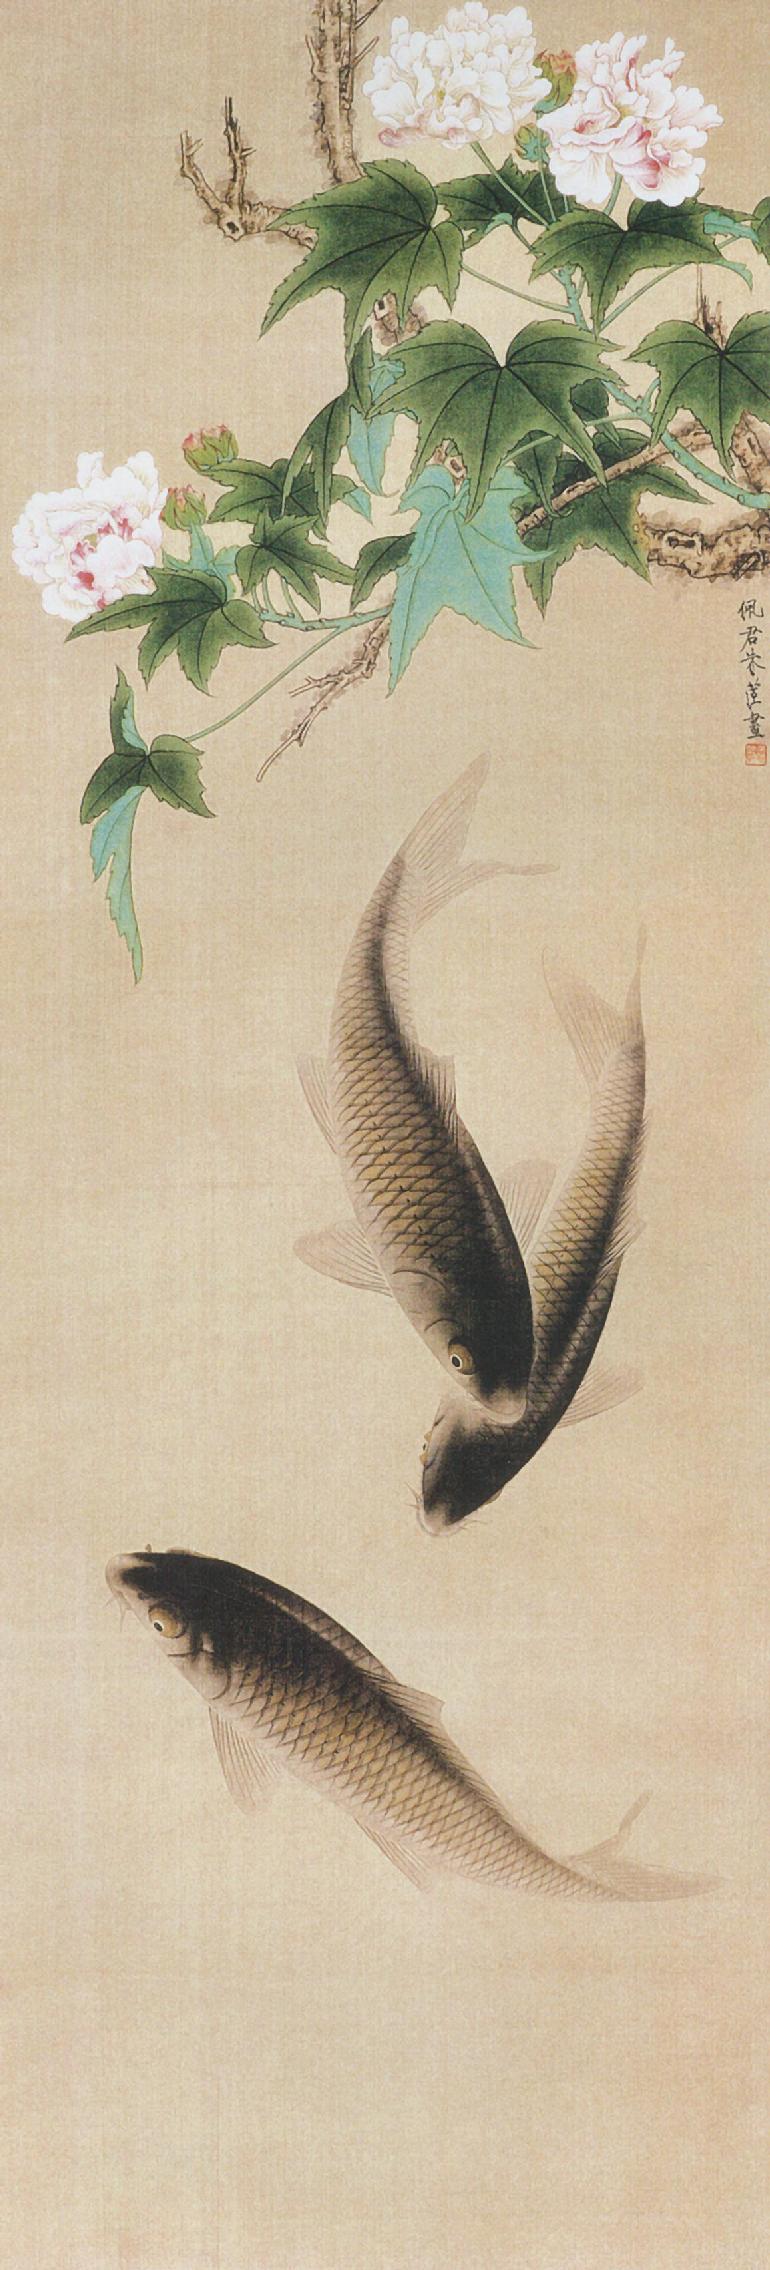 《芙蓉鯉魚》中國美術館藏